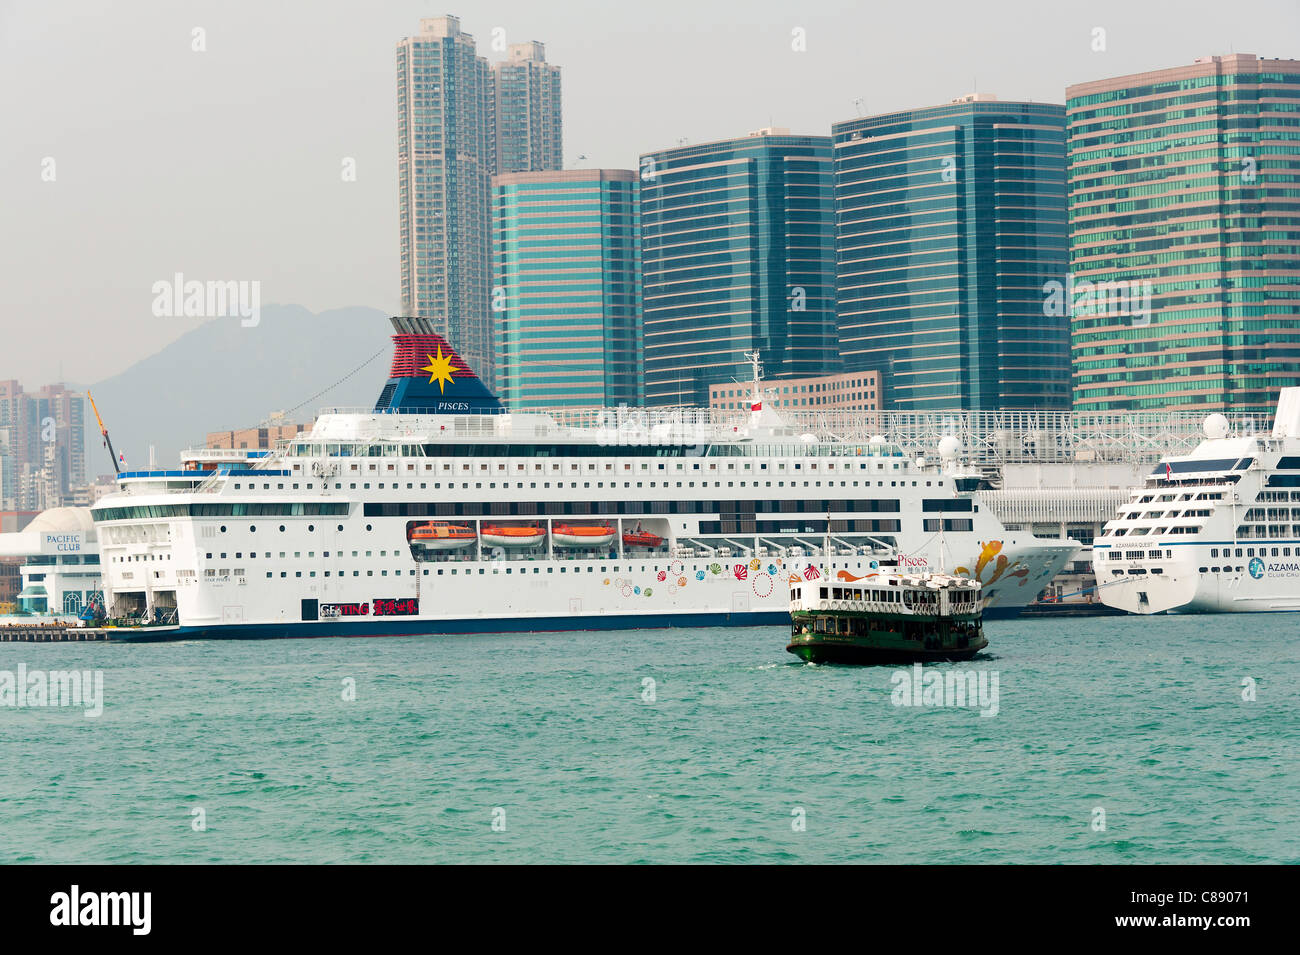 Les bateaux de croisière amarrés dans le port de Victoria avec Star Ferry de Kowloon Hong Kong Chine Asie Banque D'Images